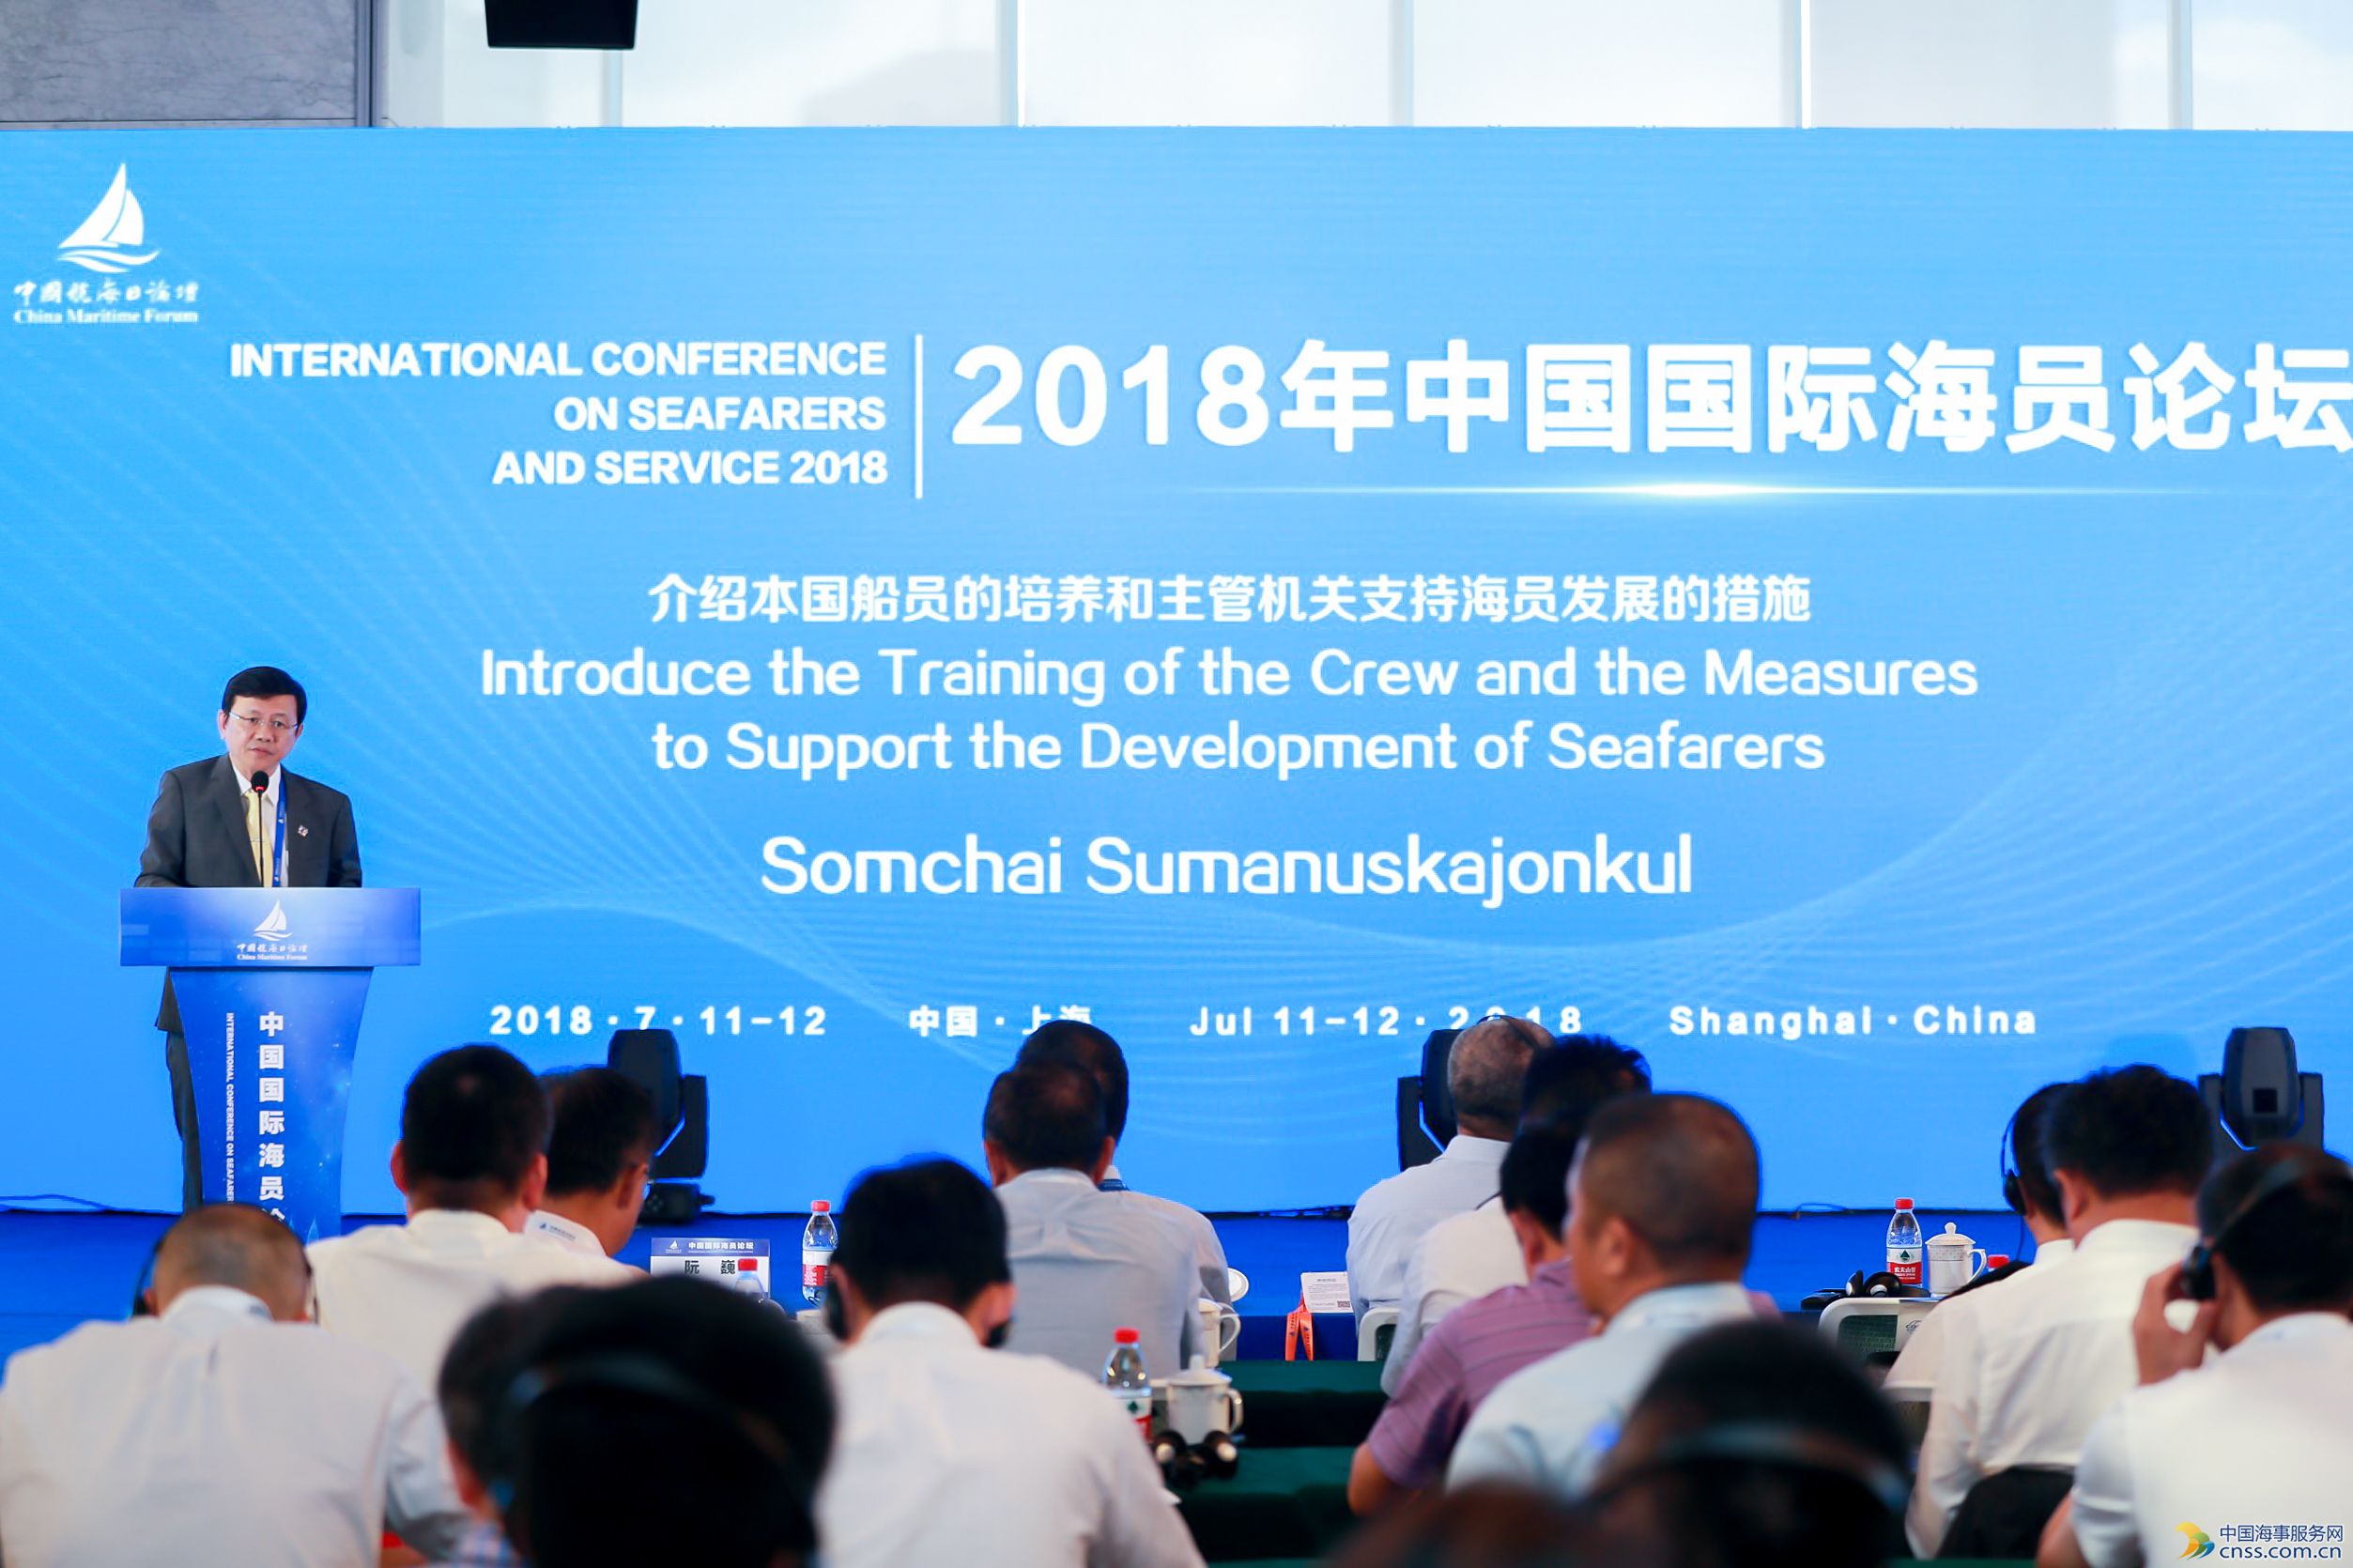 【2018中国国际海员论坛】泰国海事局副局长：直面问题 海员发展需从能力建设入手